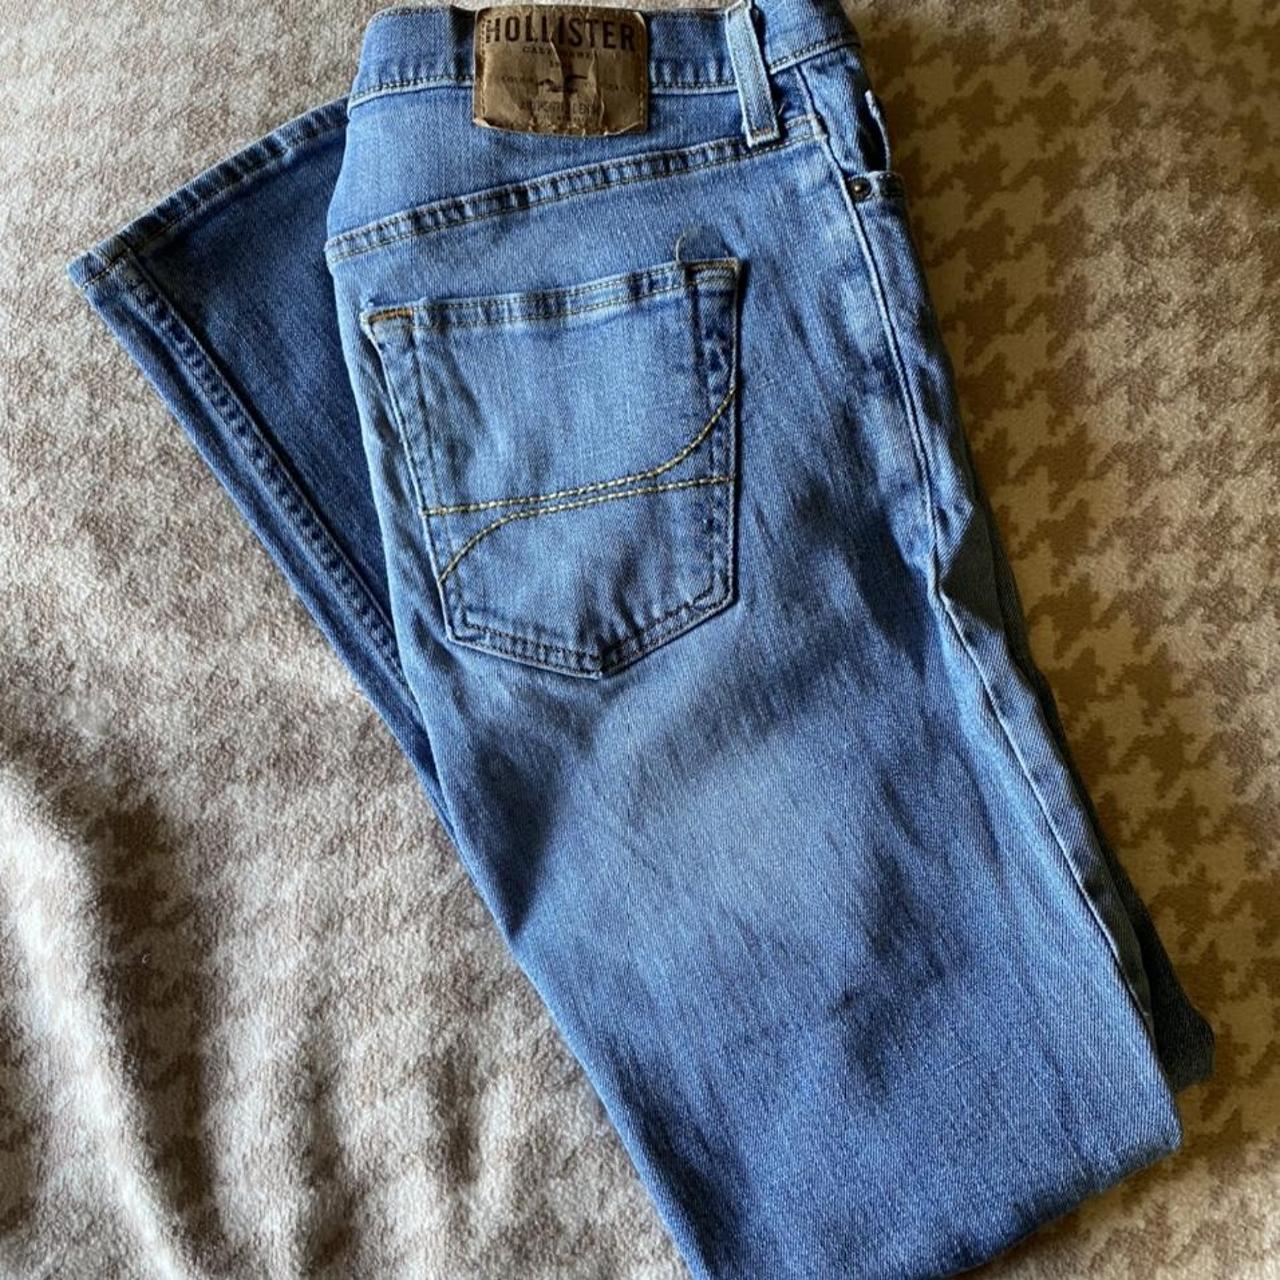 Medium wash Hollister Skinny Fit jeans. Lightly... - Depop